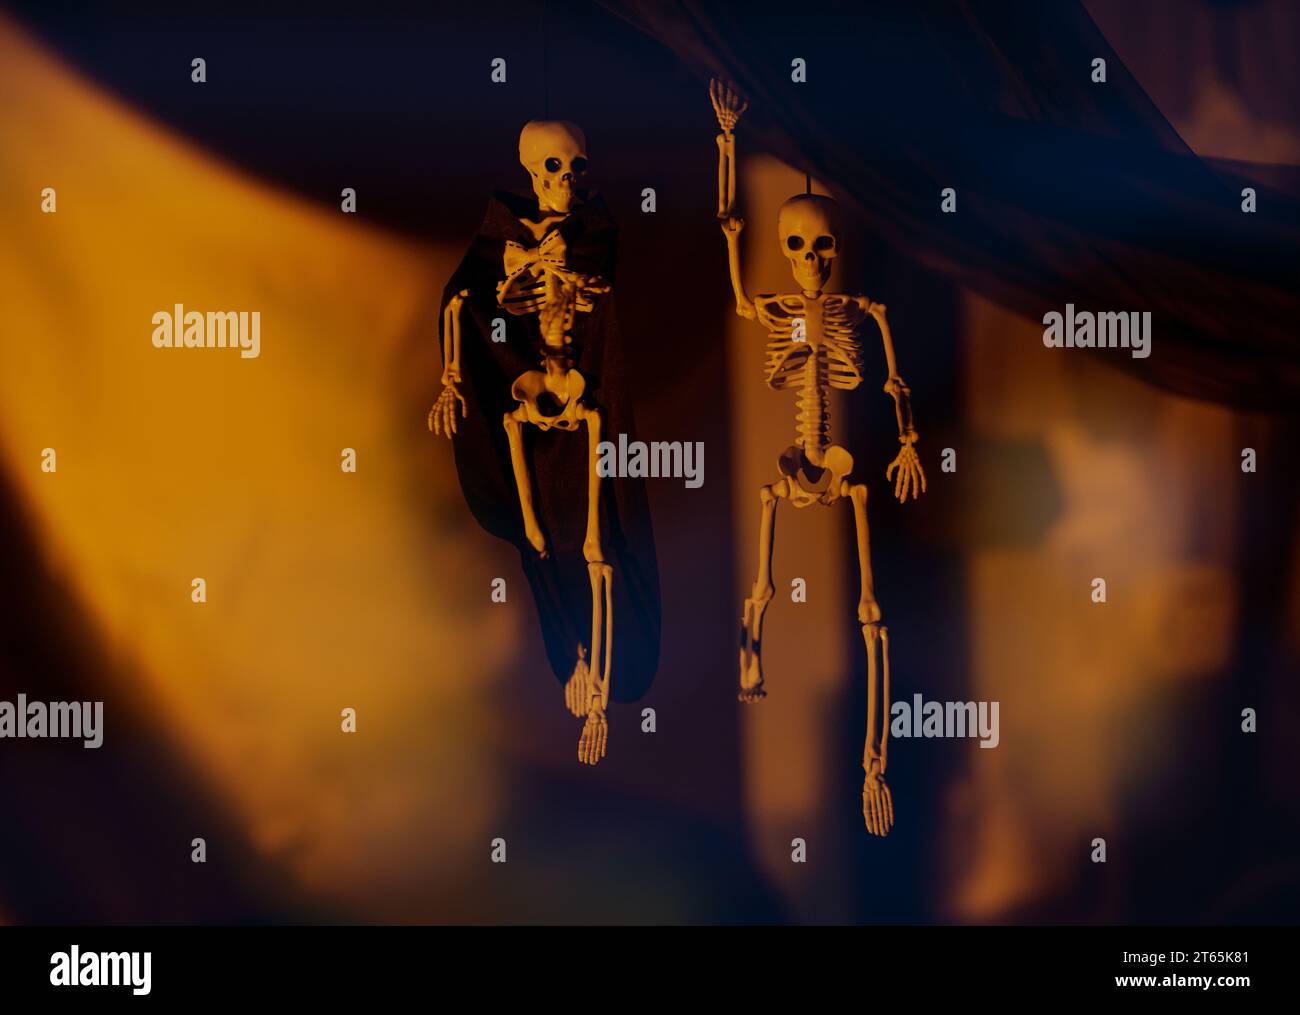 Decorazione per la festa di Halloween. Due scheletri spettrali appesi al panno nero su sfondo giallo in una stanza buia. Foto Stock